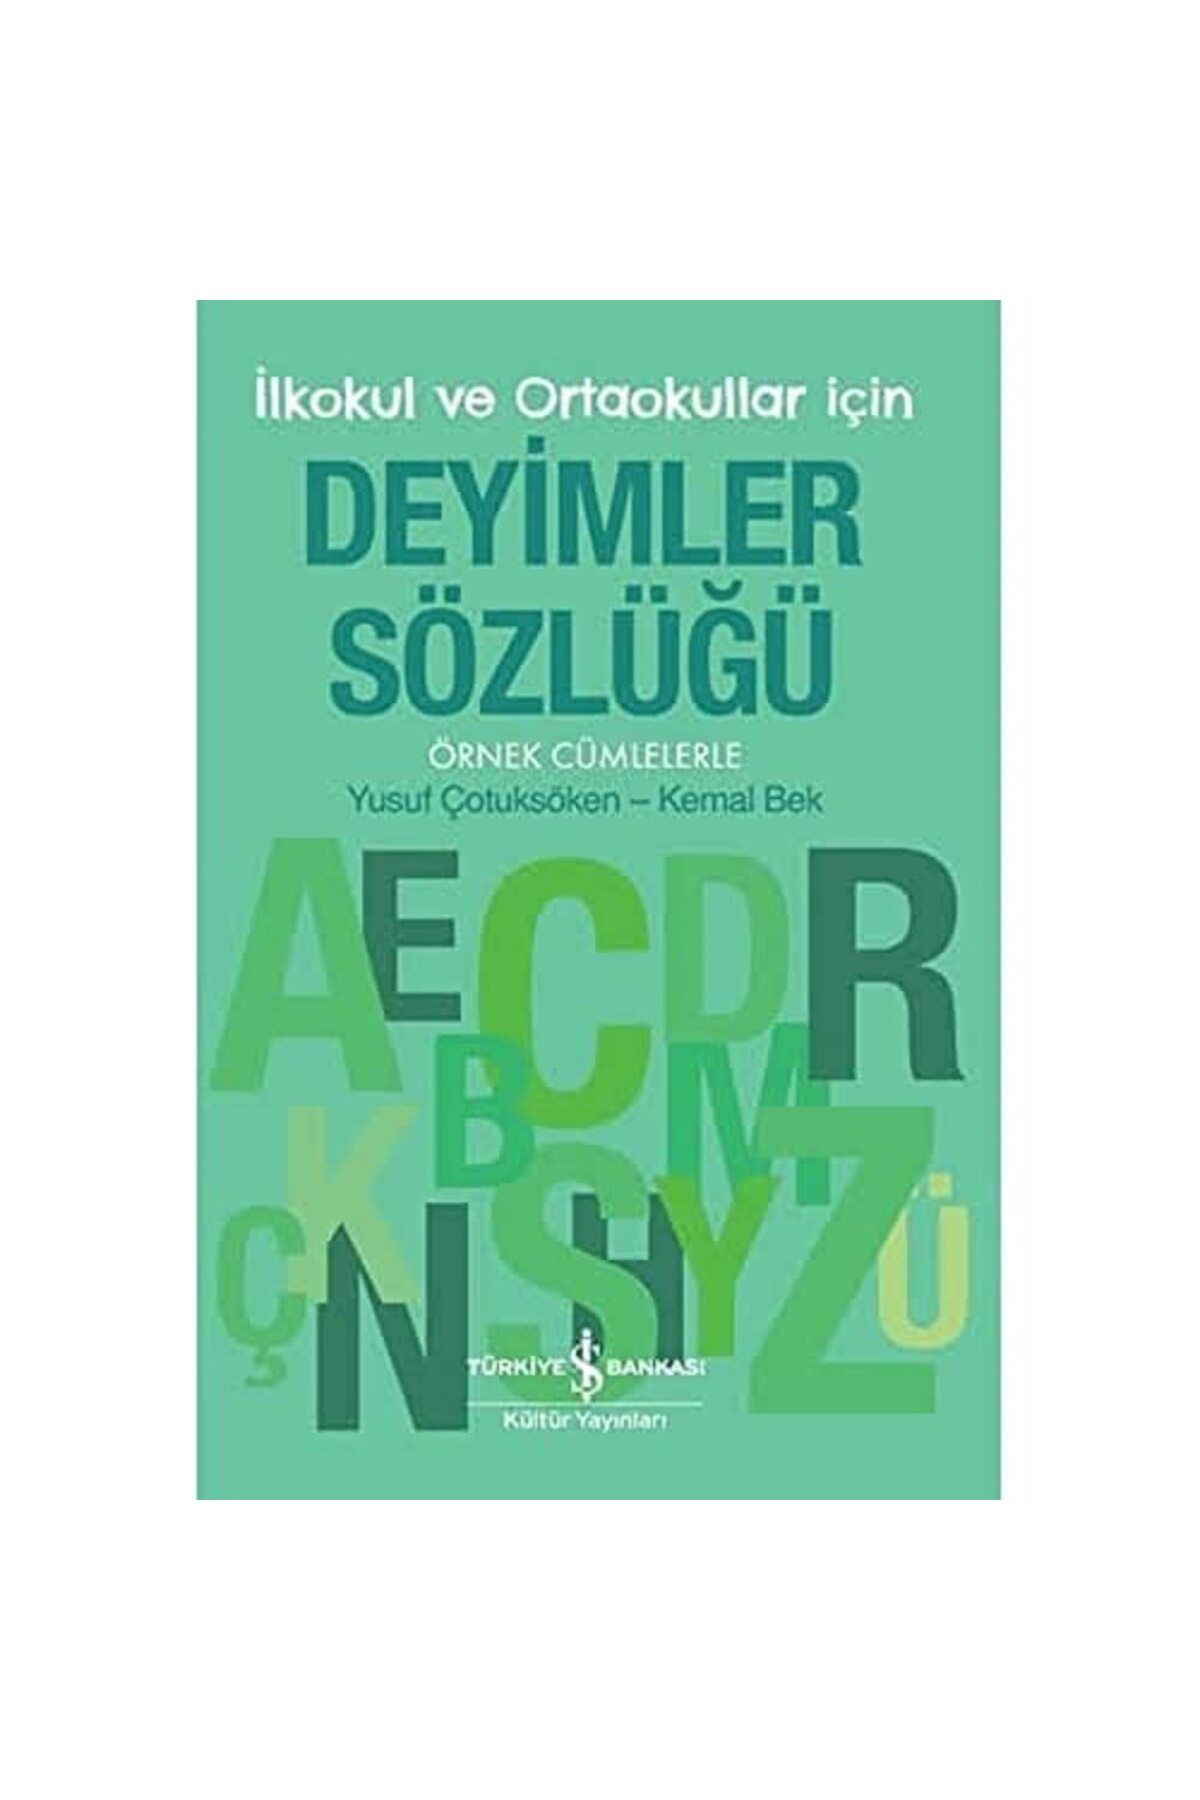 Türkiye İş Bankası Kültür Yayınları Deyimler Sözlüğü - İlkokul ve Ortaokullar İçin: Örnek Cümlelerle